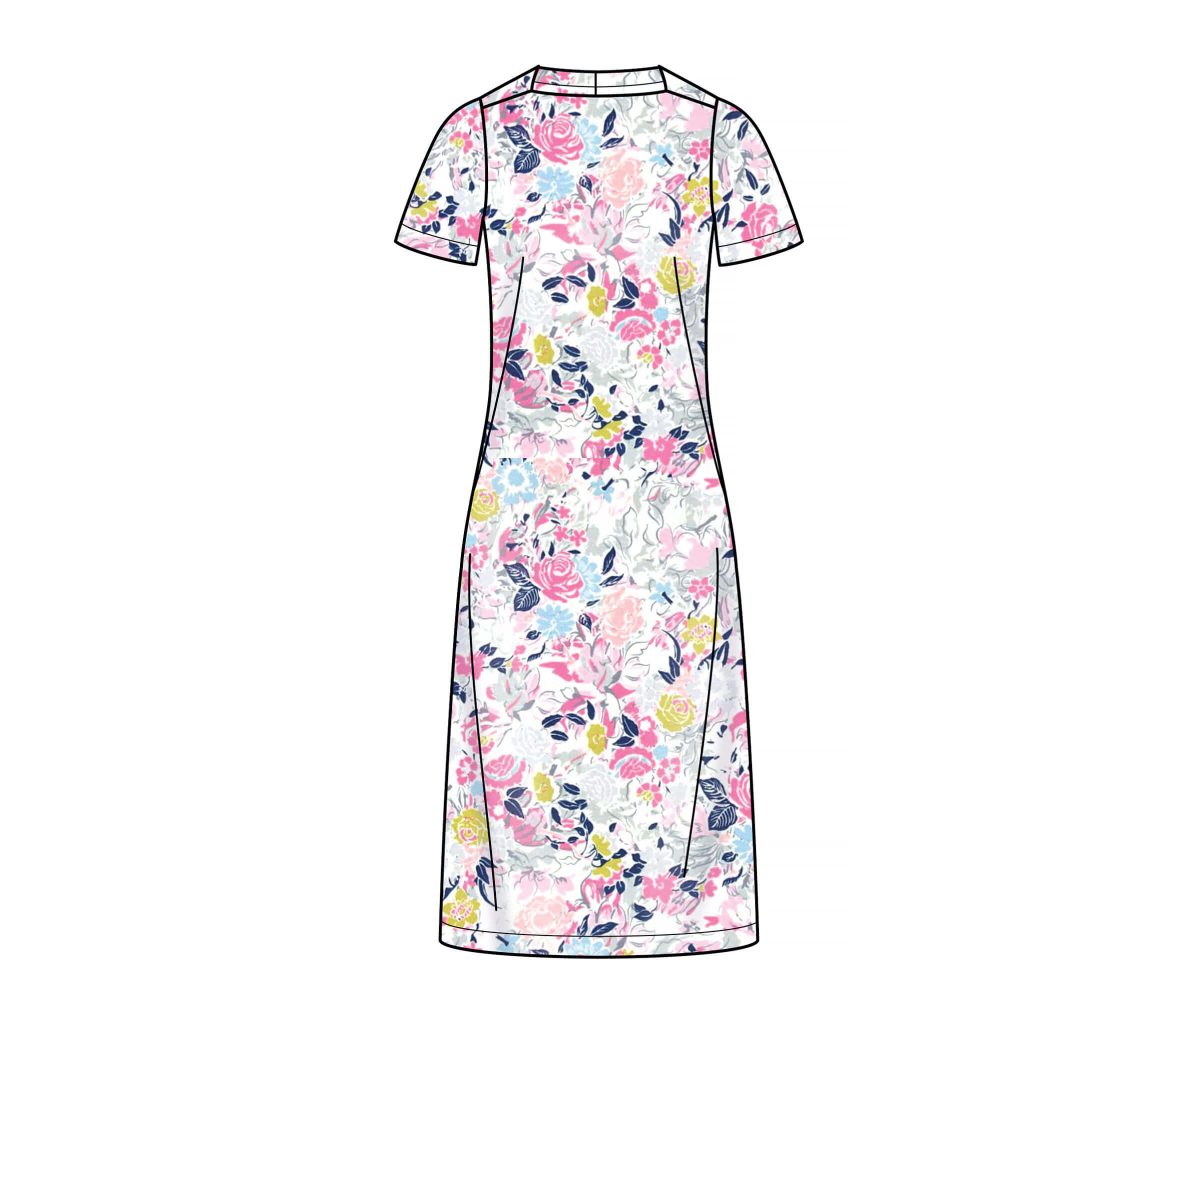 New Look Sewing Pattern N6667 Misses' Dress